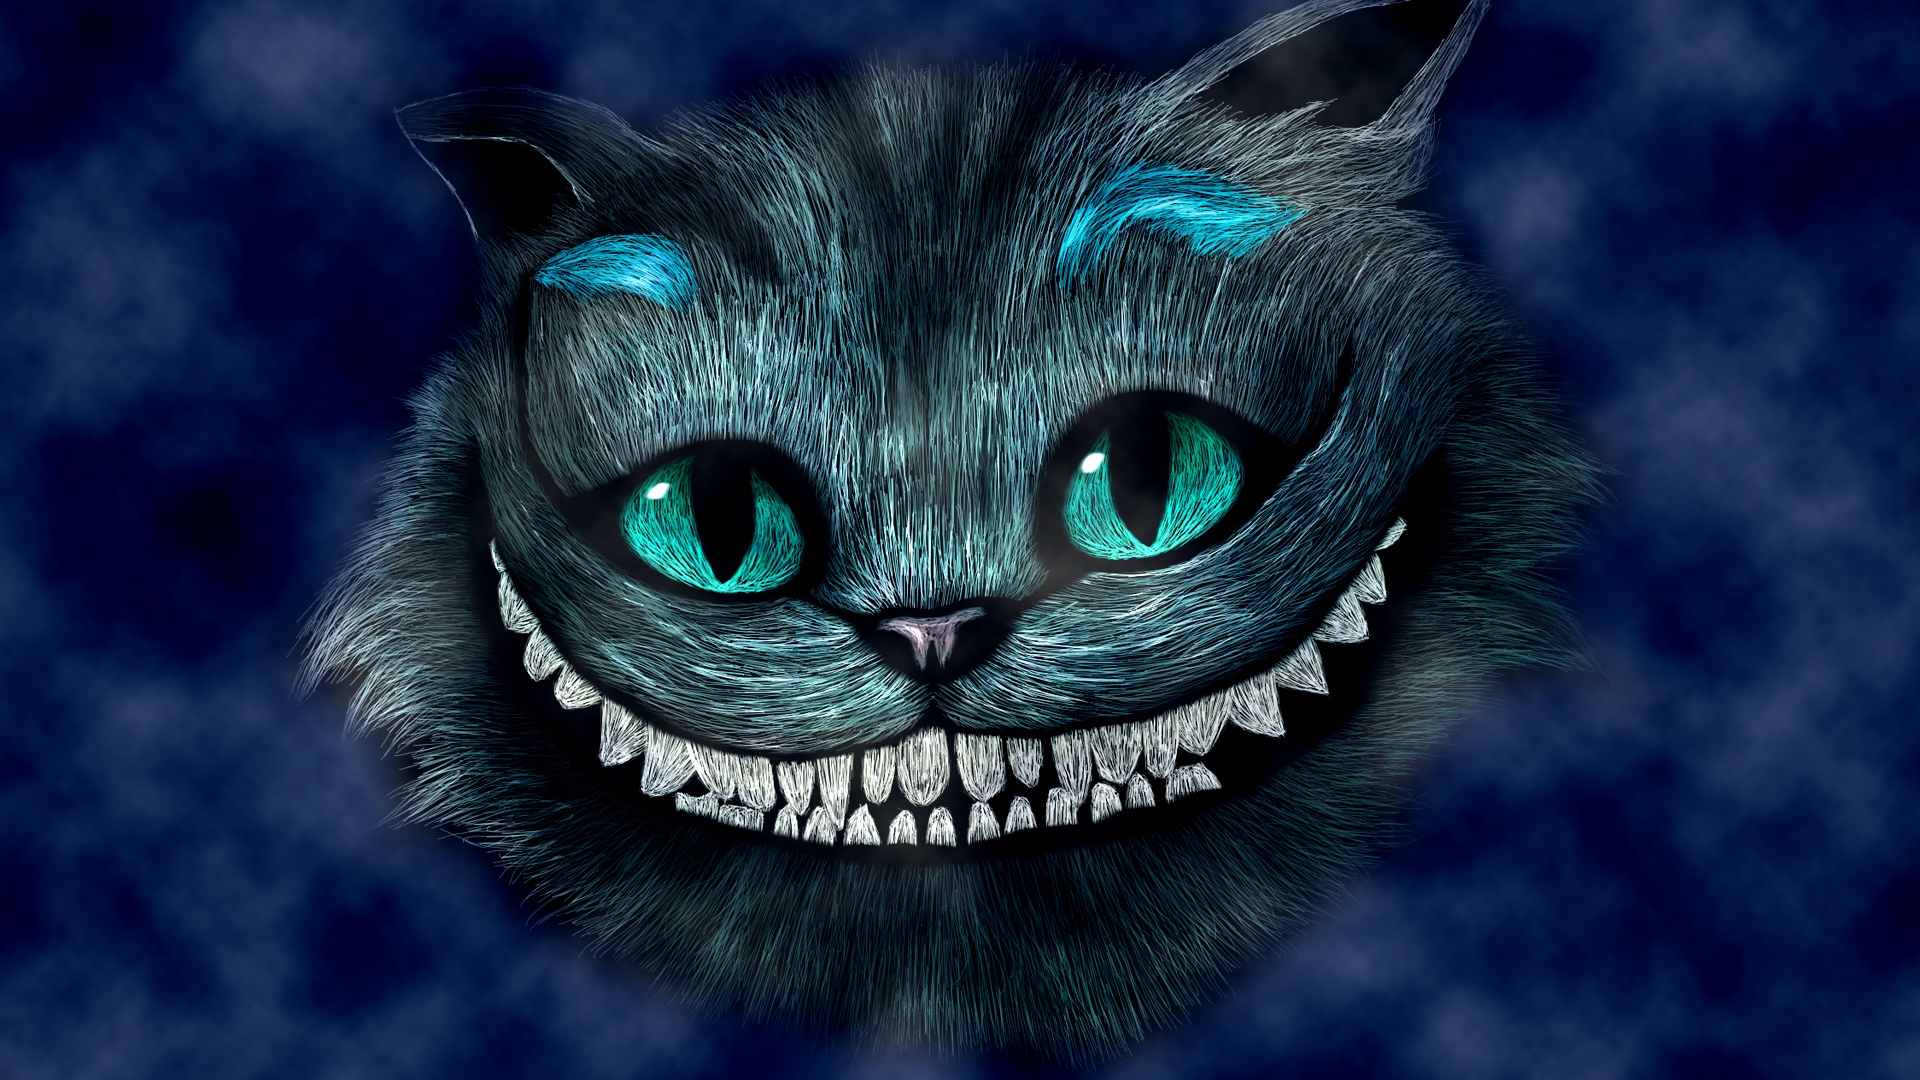 cheshire cat wallpaper,katze,schwarze katze,blau,schnurrhaare,felidae